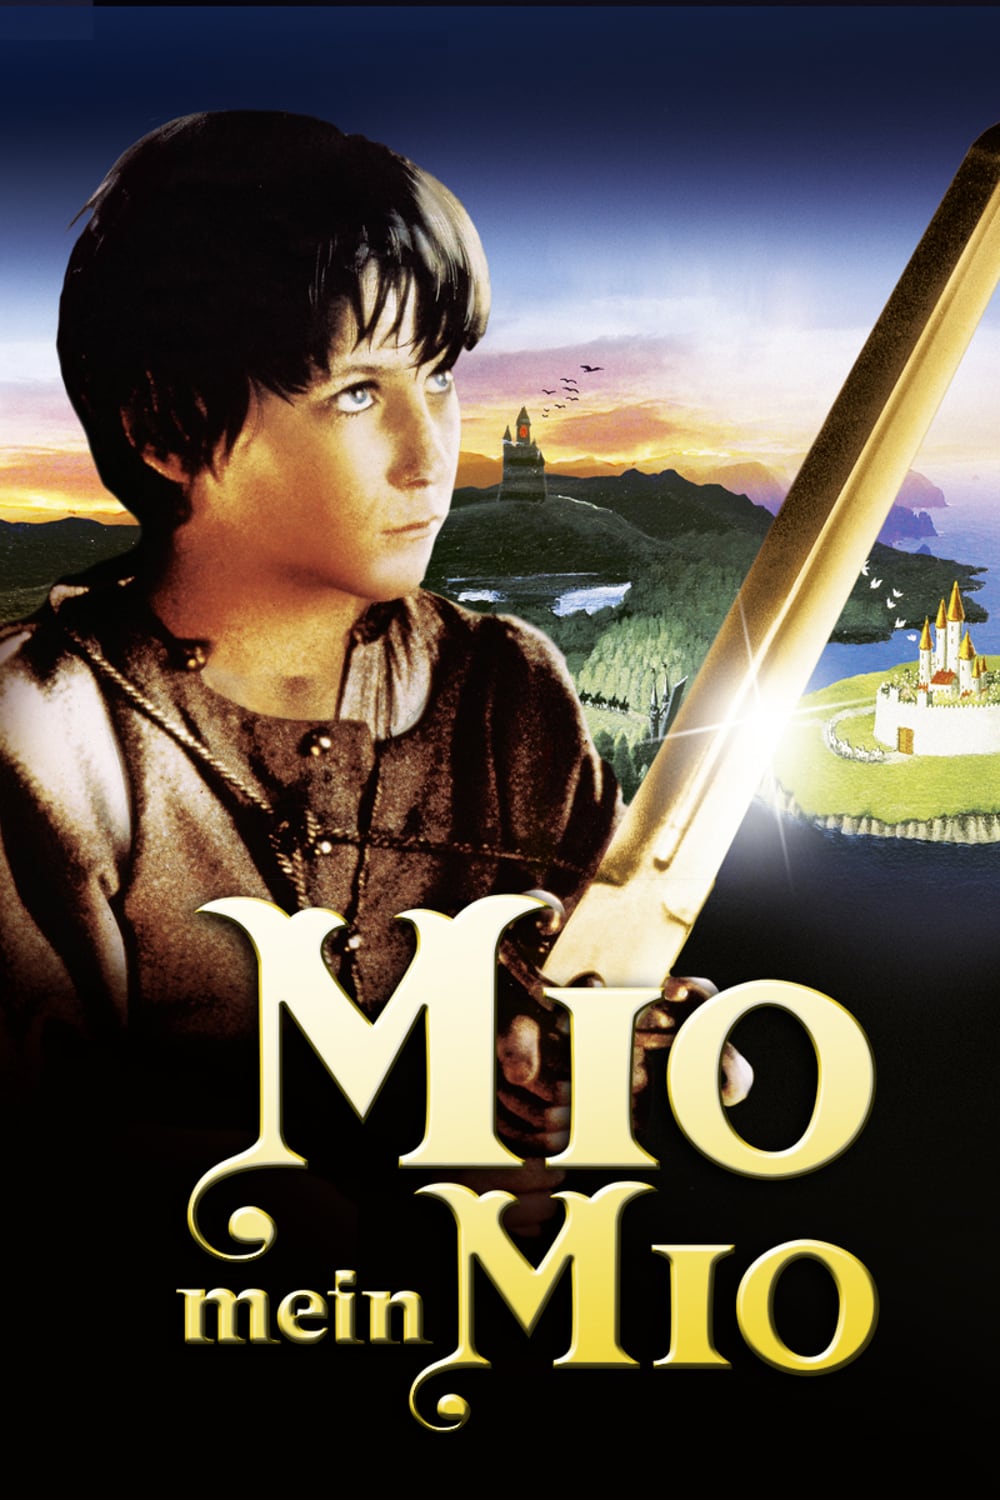 Plakat von "Mio, mein Mio"